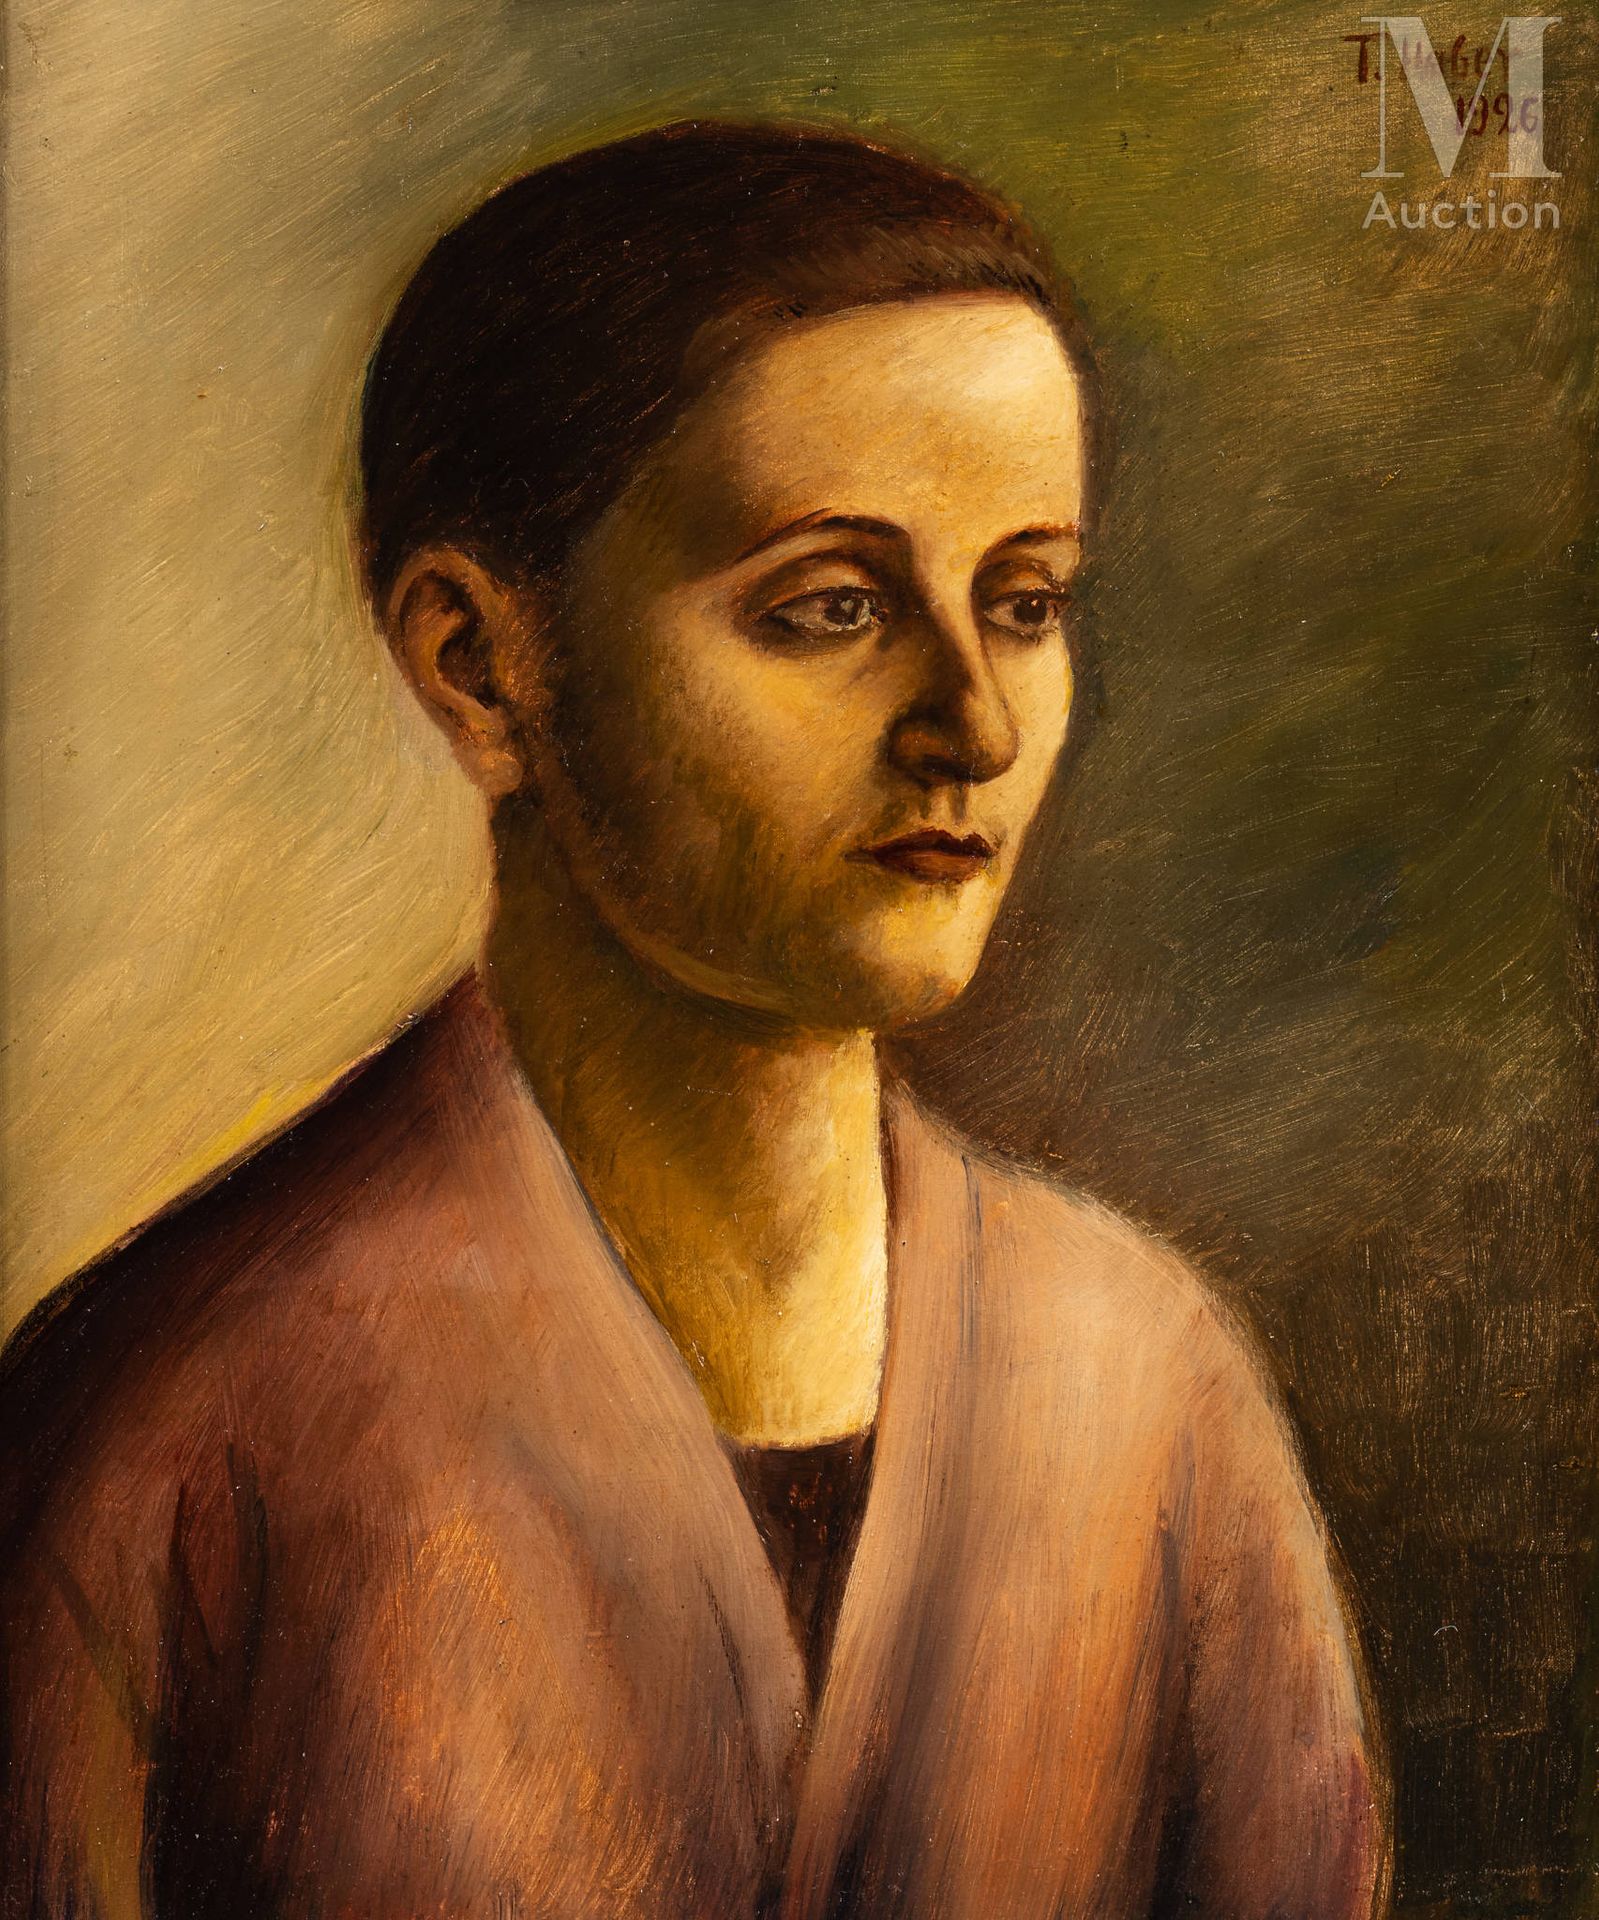 Tobiasz HABER (Lutomiersk 1885 – Treblinka 1943) Portrait de trois quarts

Réali&hellip;